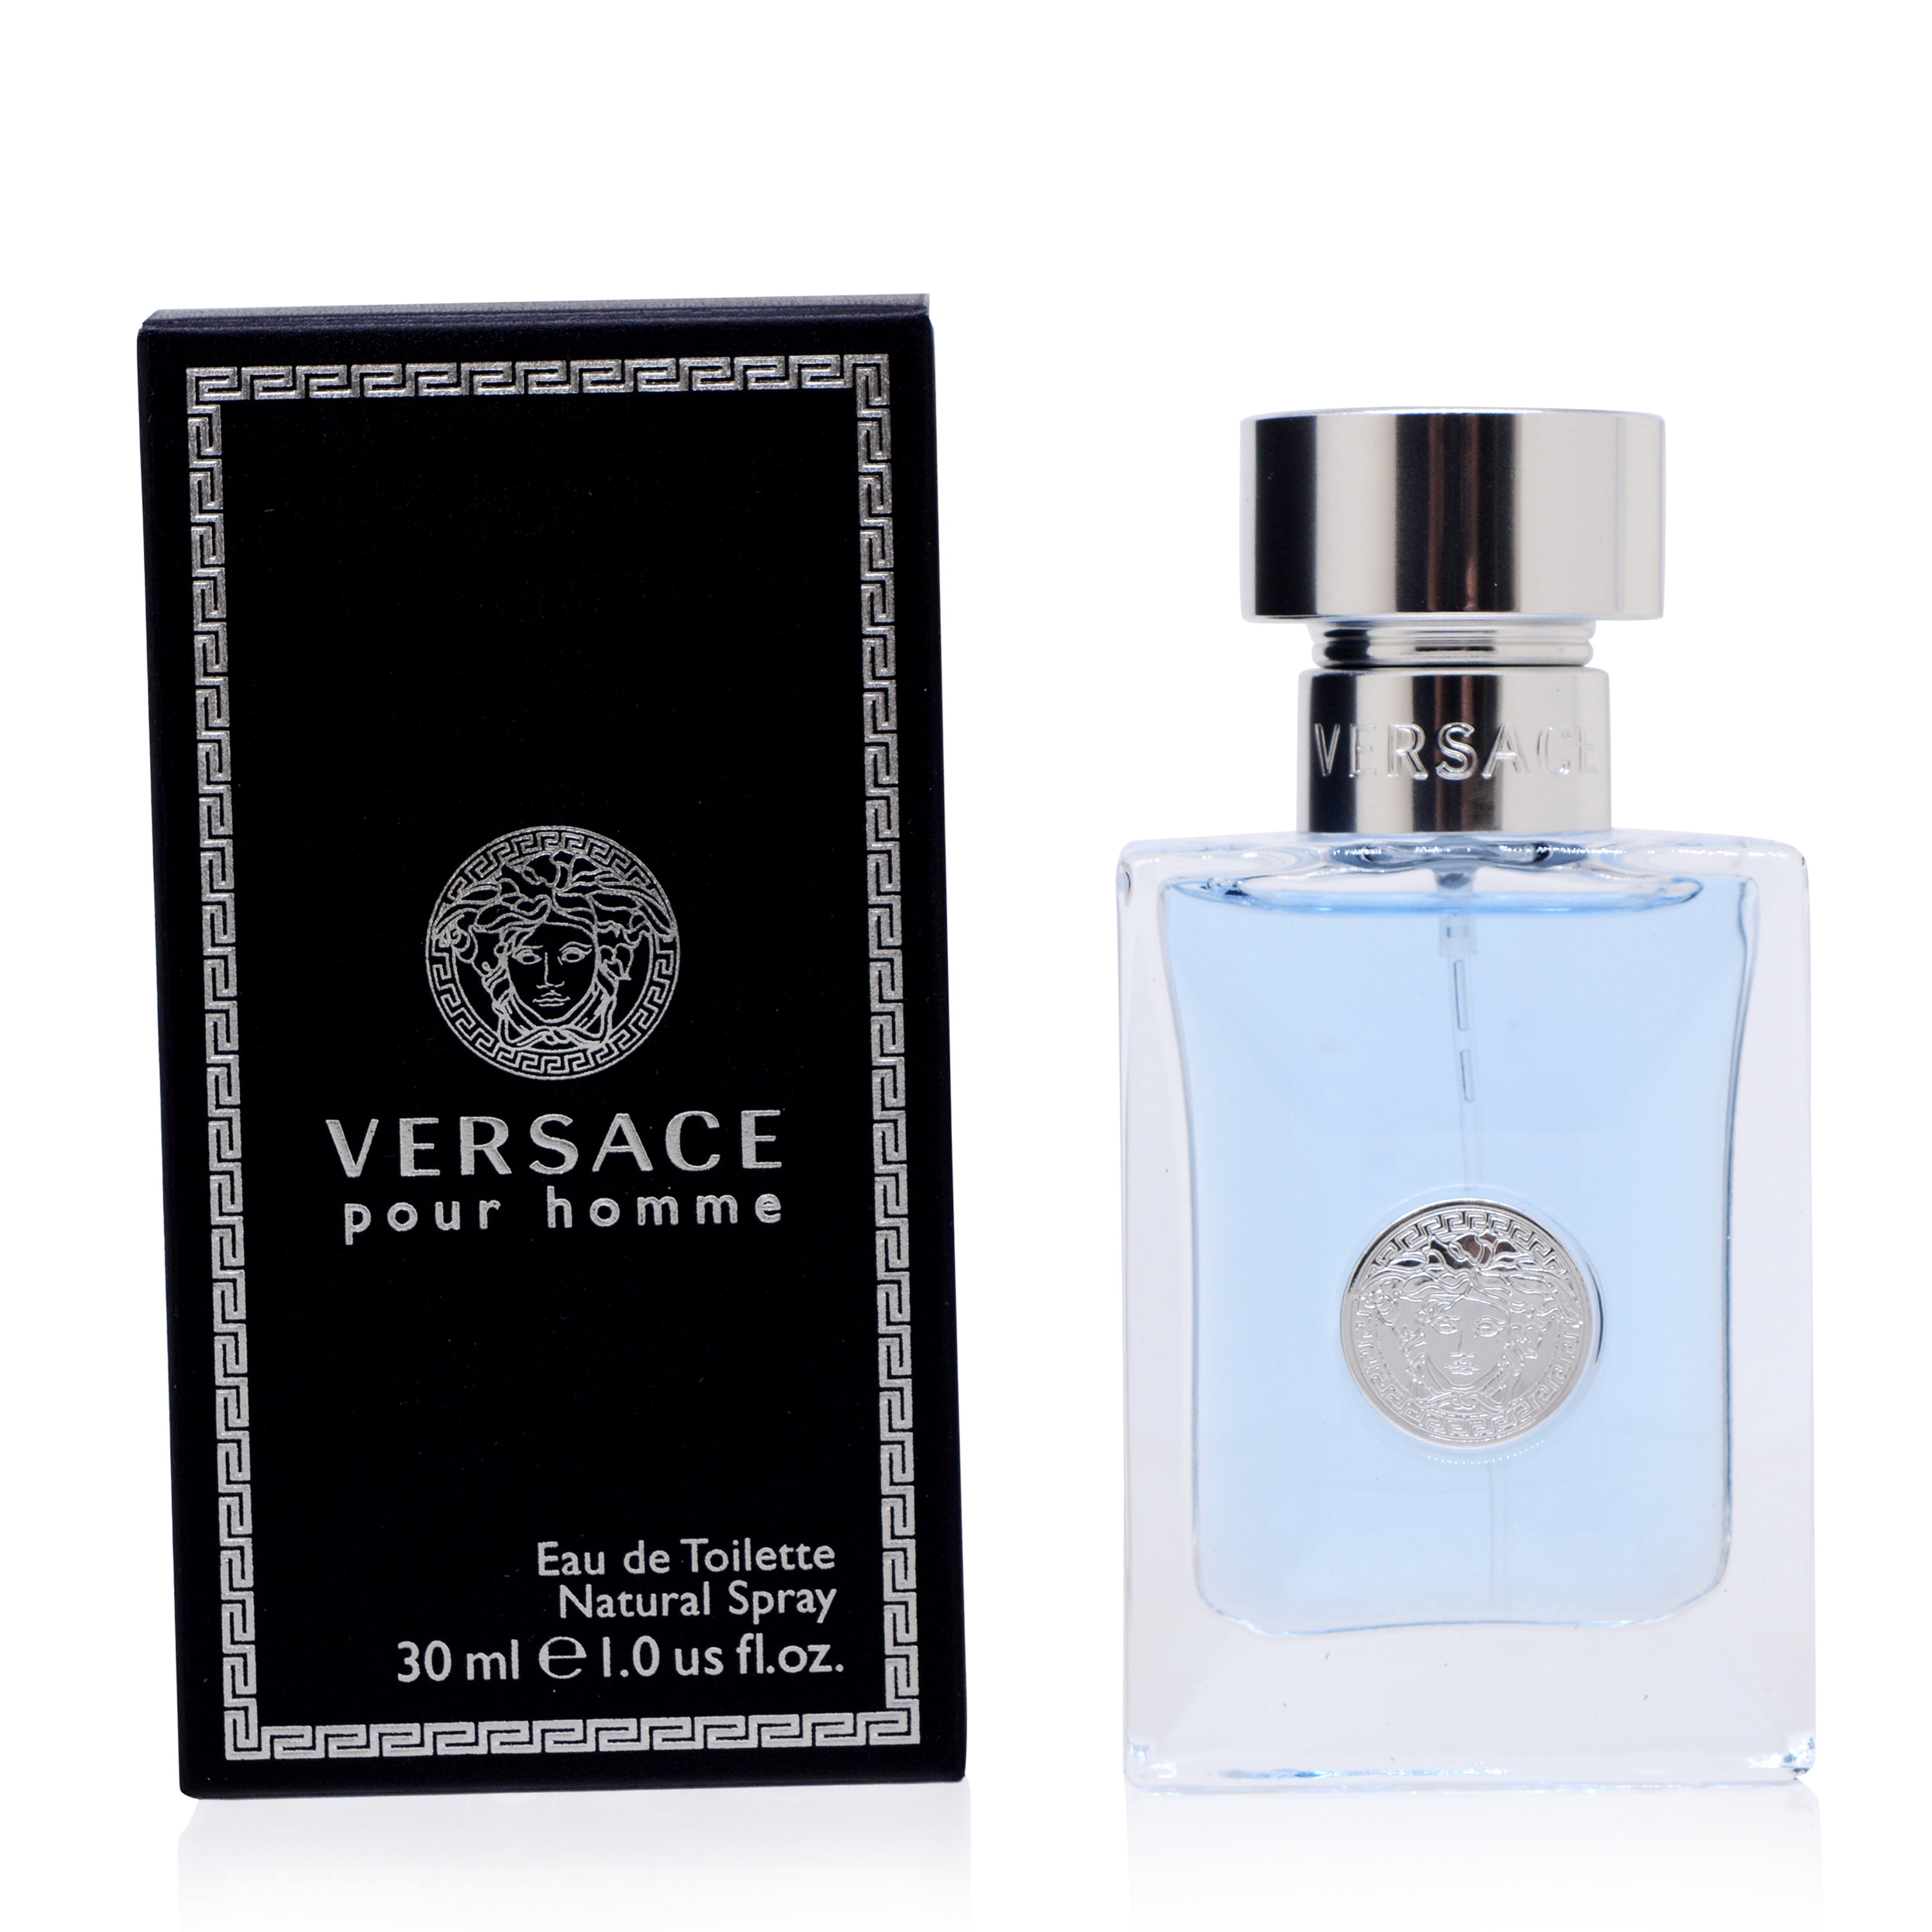 Versace Pour Homme by Versace Eau de Toilette, Cologne for Men, 1 oz -  Walmart.com